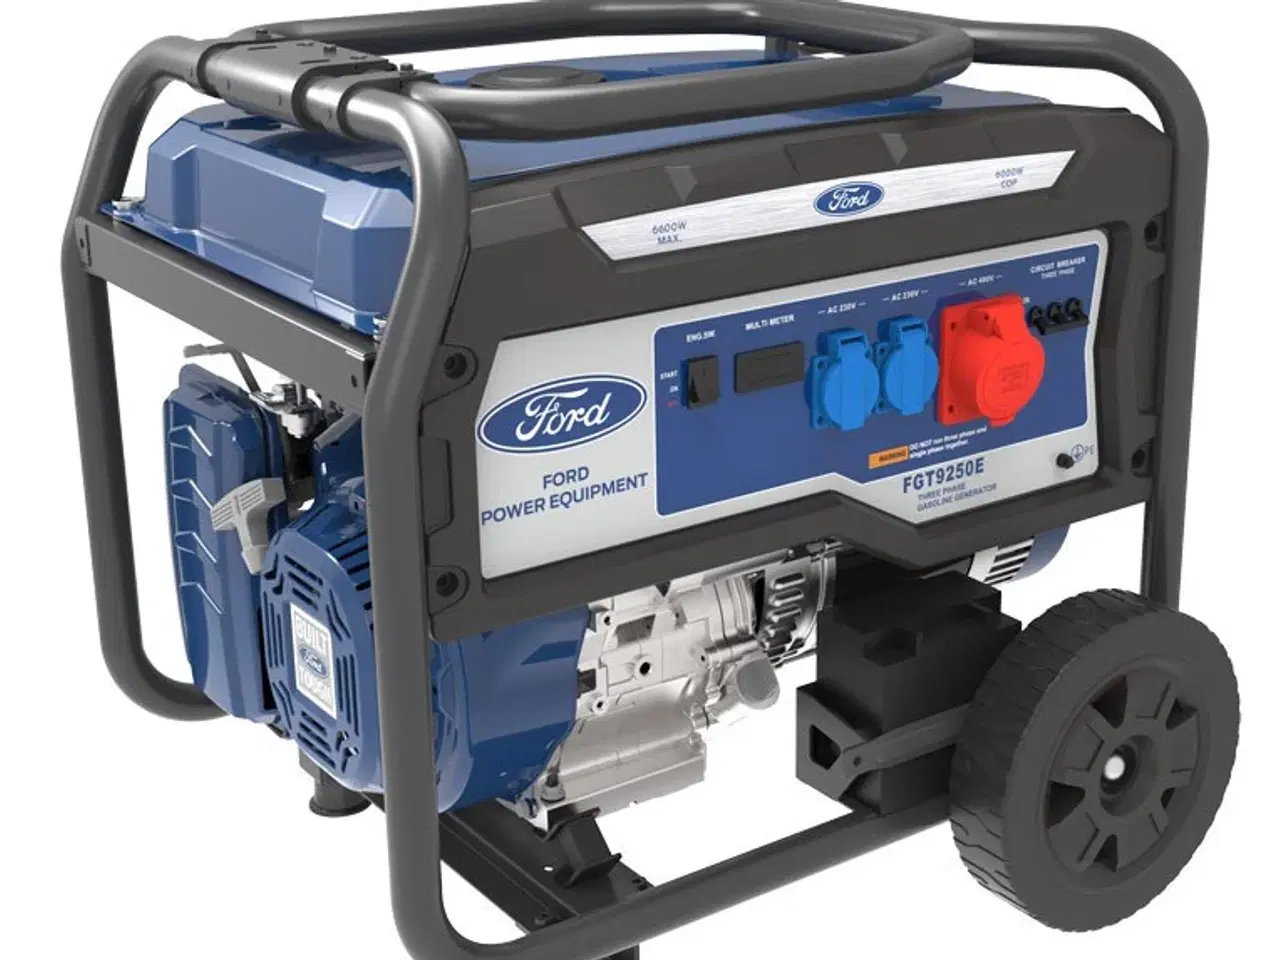 Billede 1 - Ford generator 6600 watt